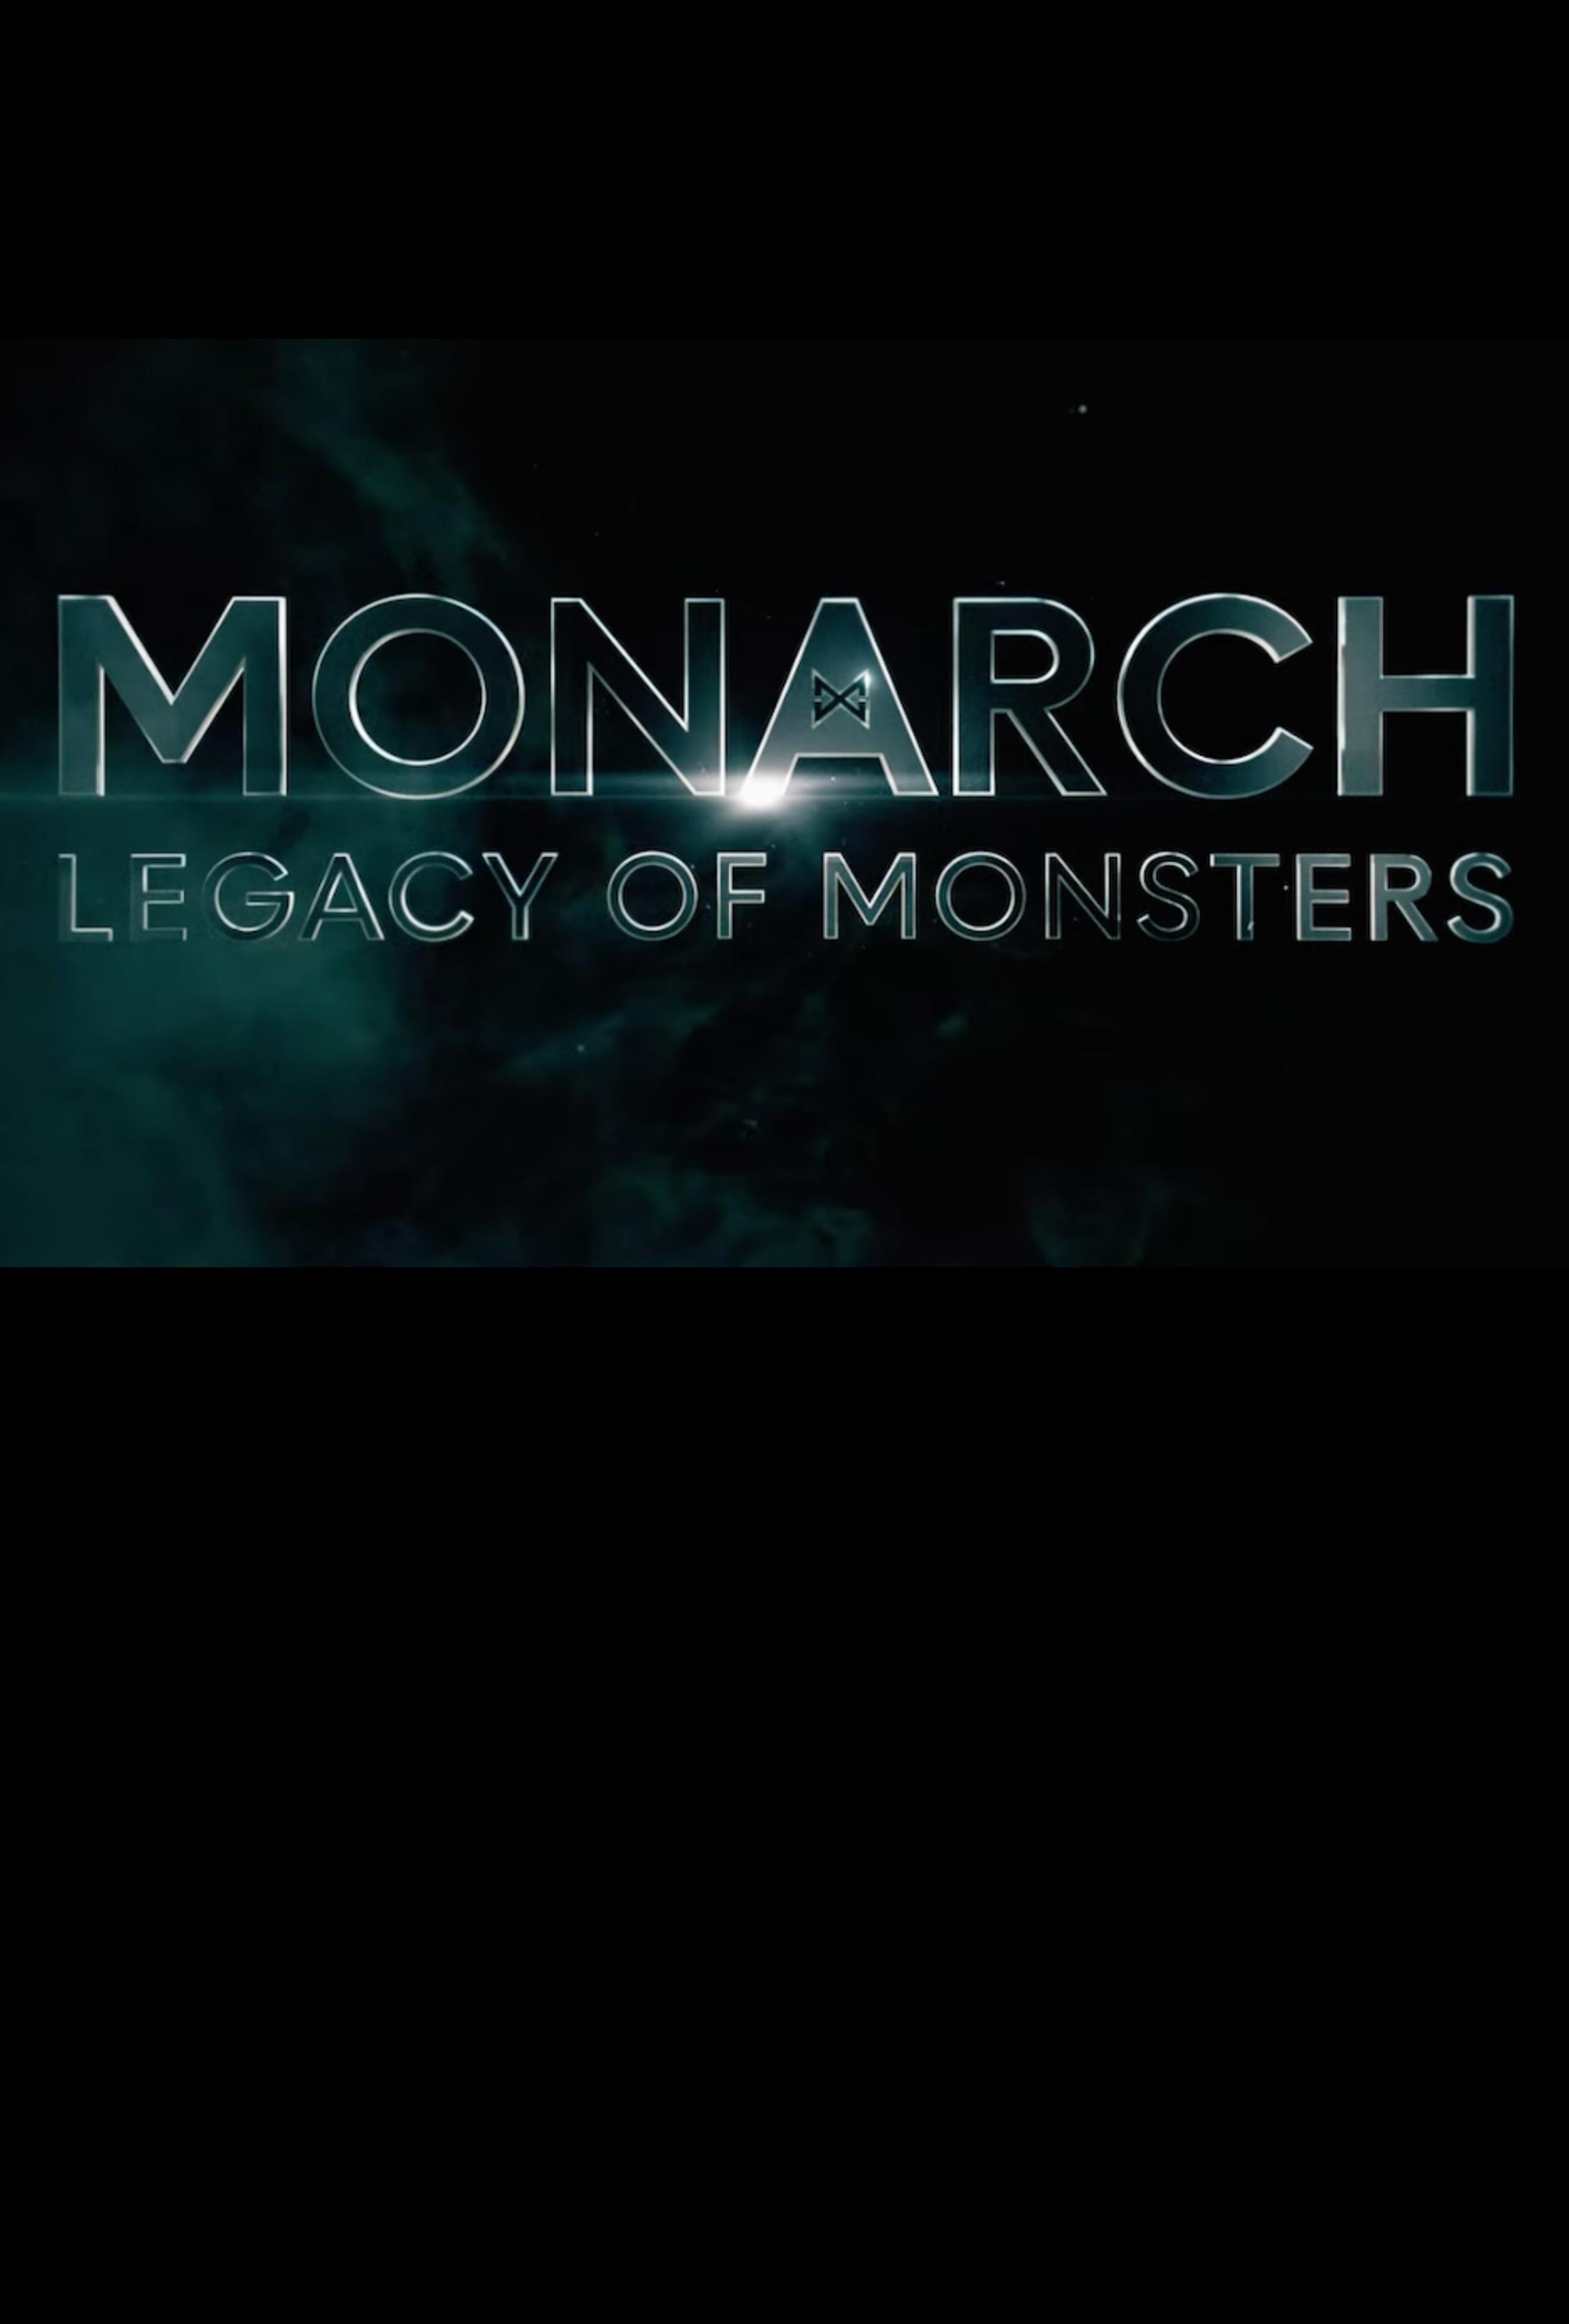 Постер фильма «Монарх»: Наследие монстров | Monarch: Legacy of Monsters